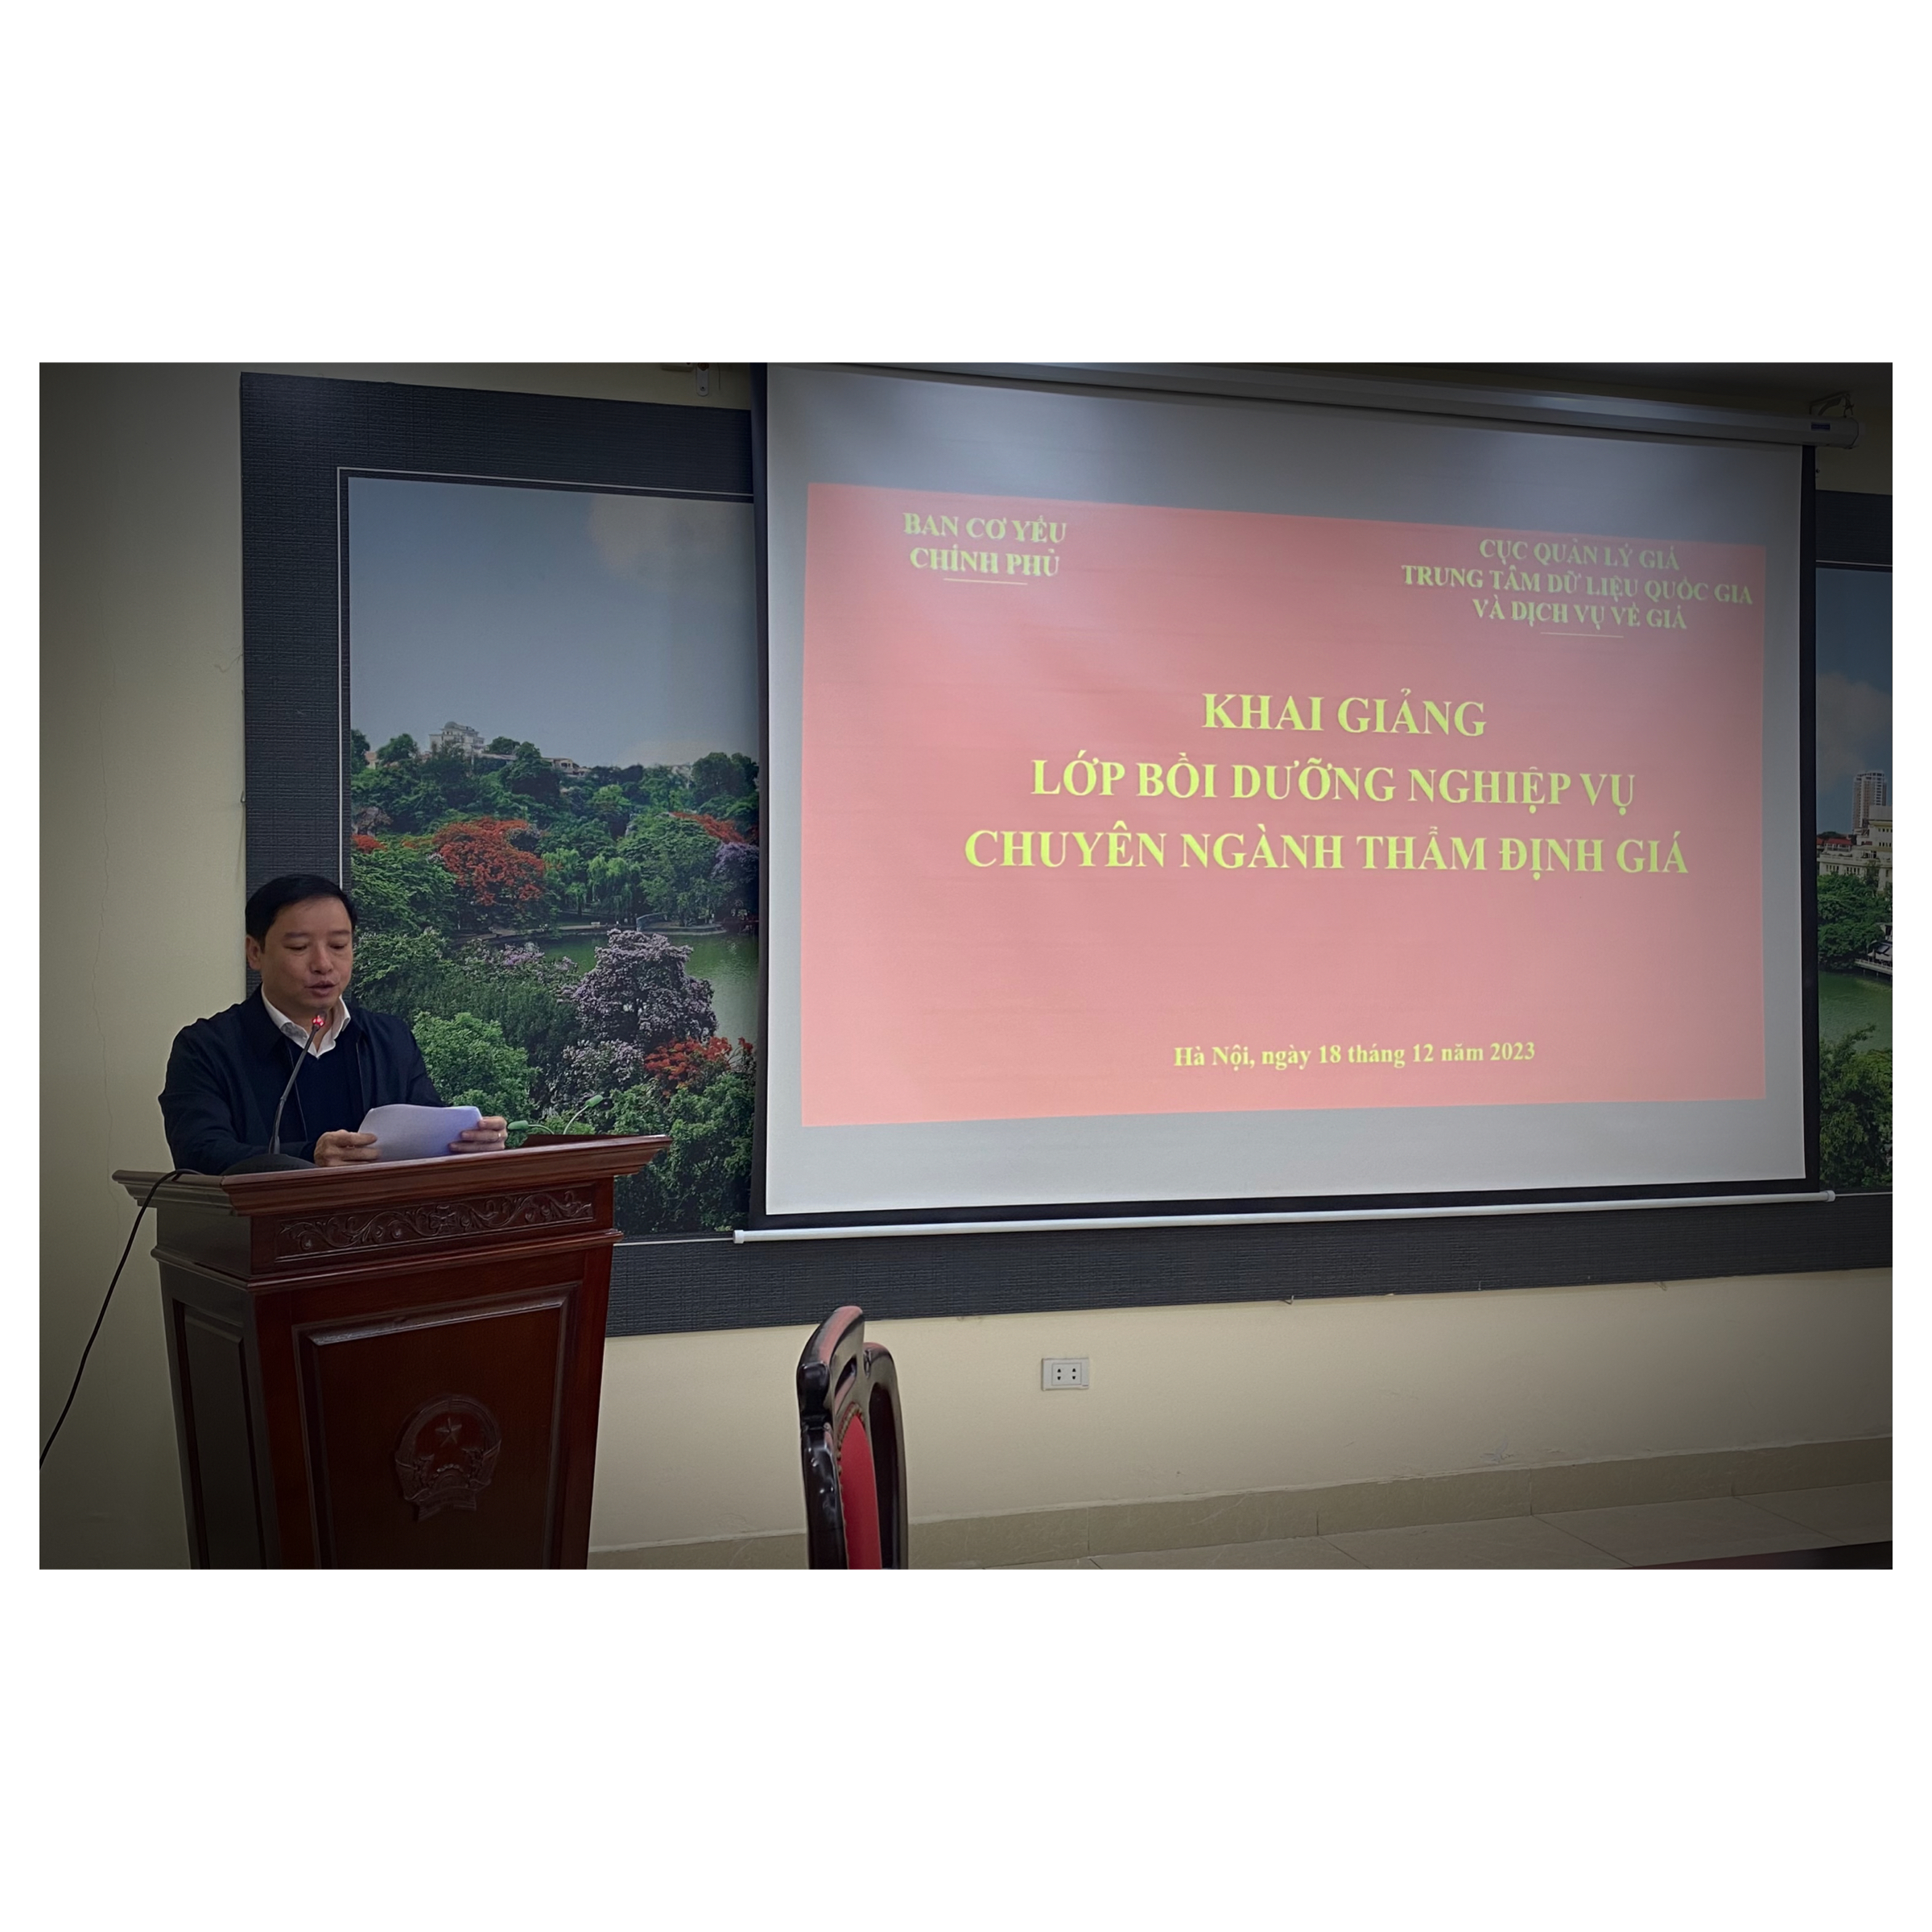 Khai giảng khoá Bồi dưỡng nghiệp vụ chuyên ngành thẩm định giá (thẩm định giá nhà nước) tại Hà Nội